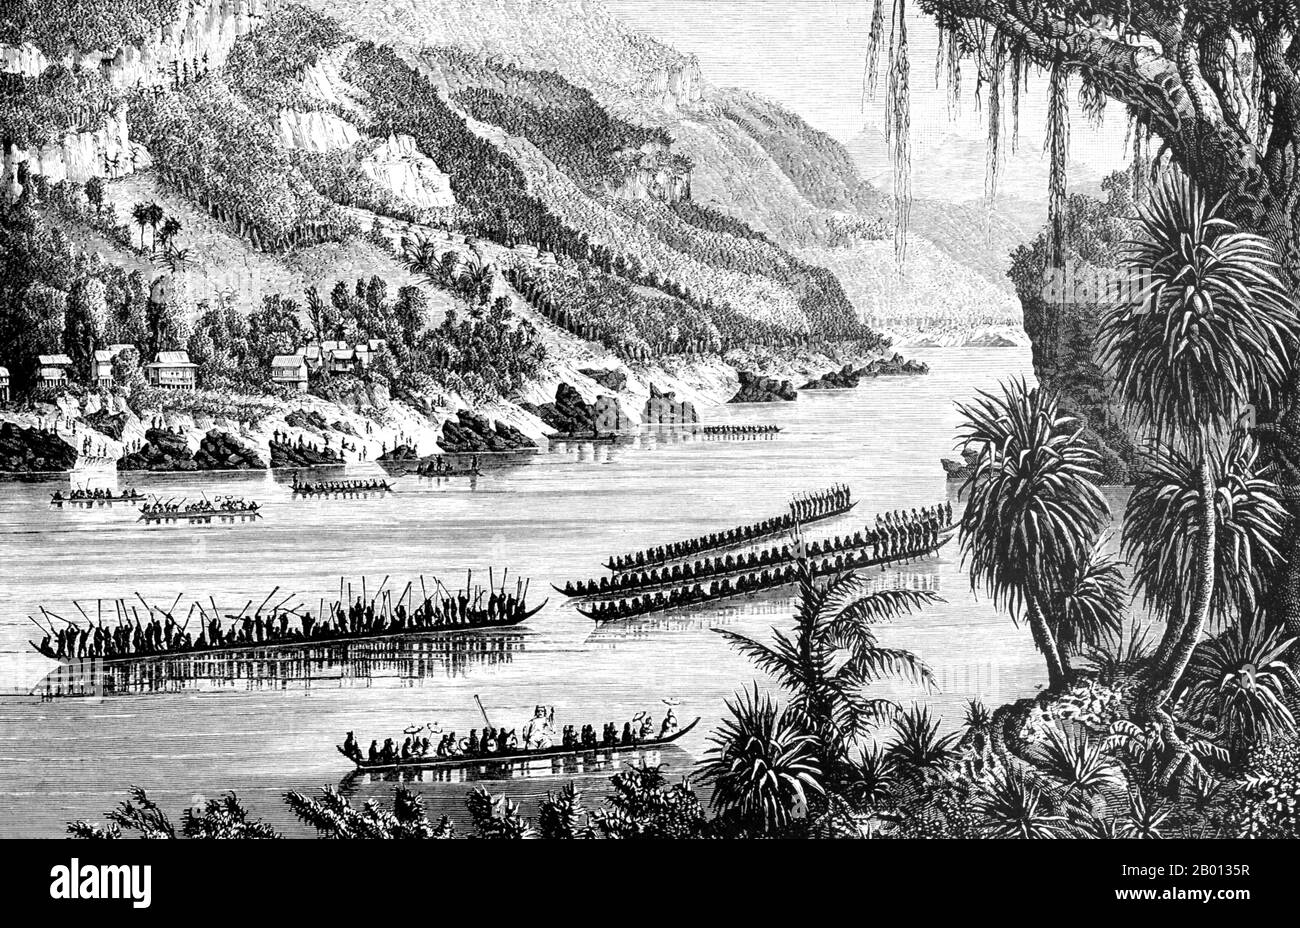 Kambodscha: Pirogue-Boot-Rennen auf dem Mekong-Fluss. Stich von Louis Delaporte (1842-1925), 1866-1868. Die Berichte über pigrogue-Rennen in Indochina gehen auf die angkorianische Zeit zurück, als die Khmers unter König Jayavarman VII. Nach einem langen Seekrieg (1177-81) über die Chams von Champa triumphierten. Jahre später sahen französische Kolonisten Bootsrennen, die vermutlich die Vorläufer der heutigen Drachenboot- und Naga-Schlangenbootrennen sind. Heute kommen jeden November Millionen Kambodschaner auf Phnom Penh zum dreitägigen Bon Om Tuk Water Festival, wo das Highlight die dramatischen Bootsrennen sind. Stockfoto